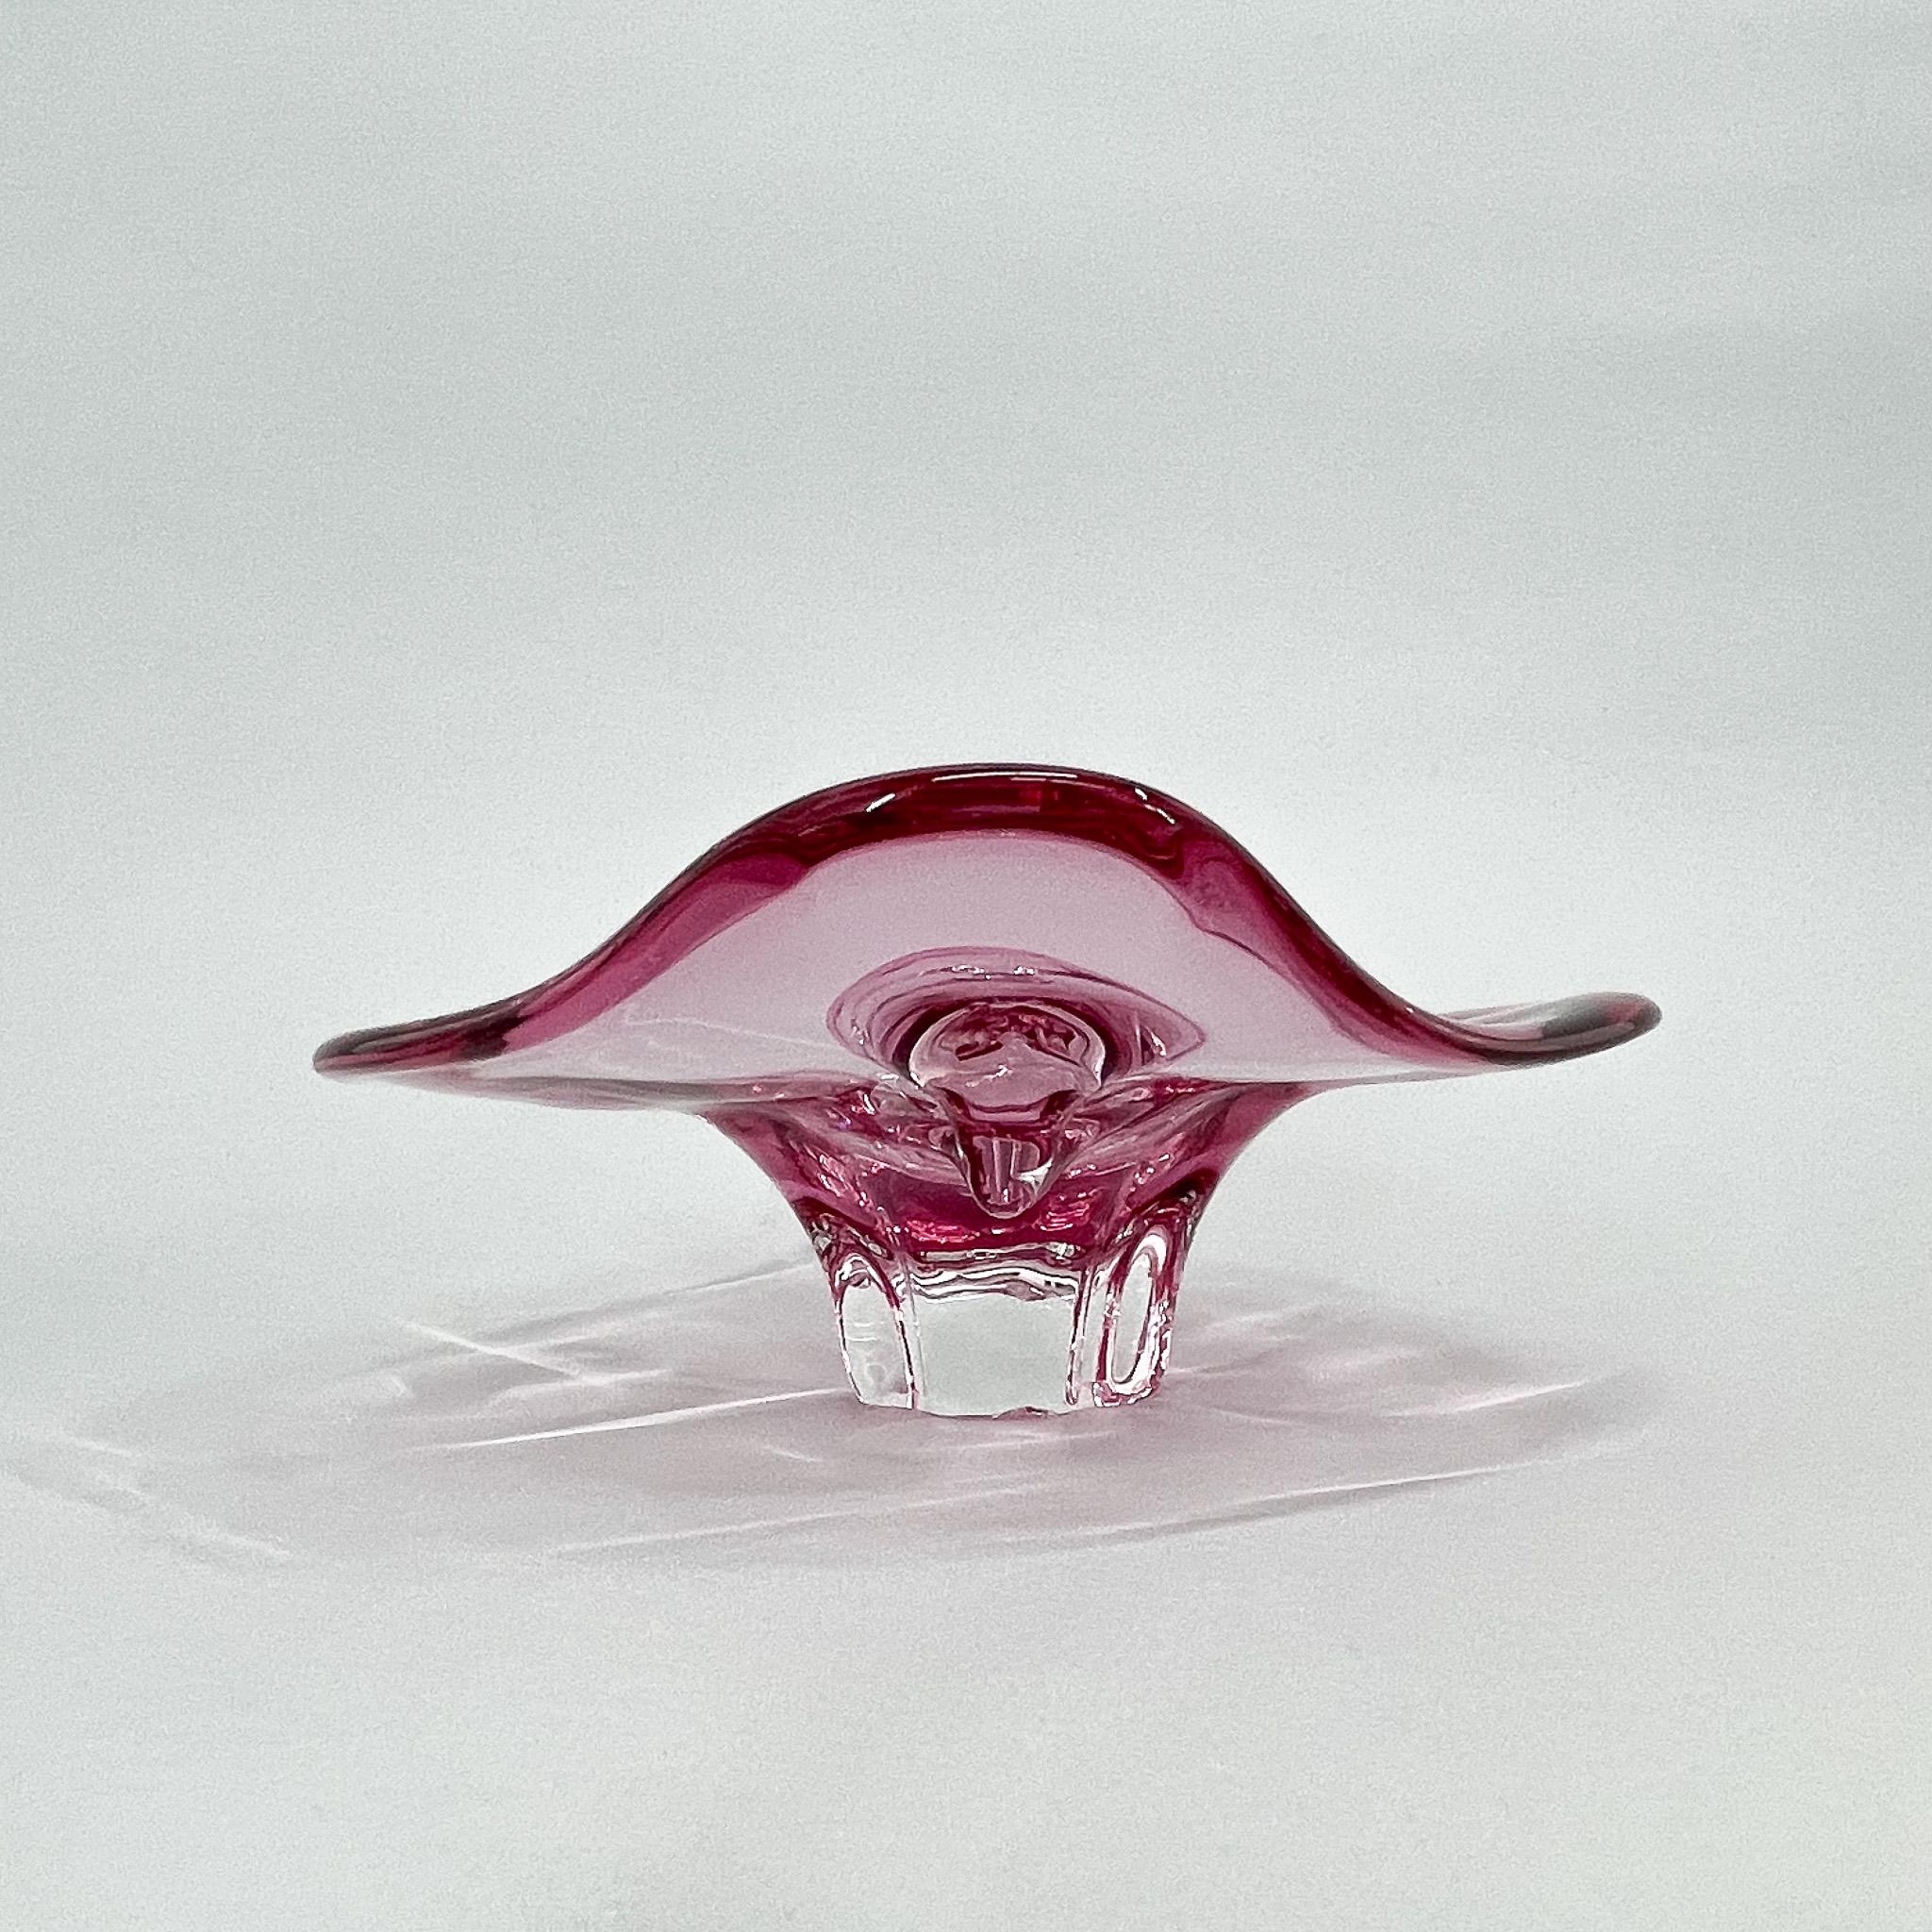 20th Century 1960s Czech Art Glass Bowl by Josef Hospodka for Chribska Glassworks For Sale